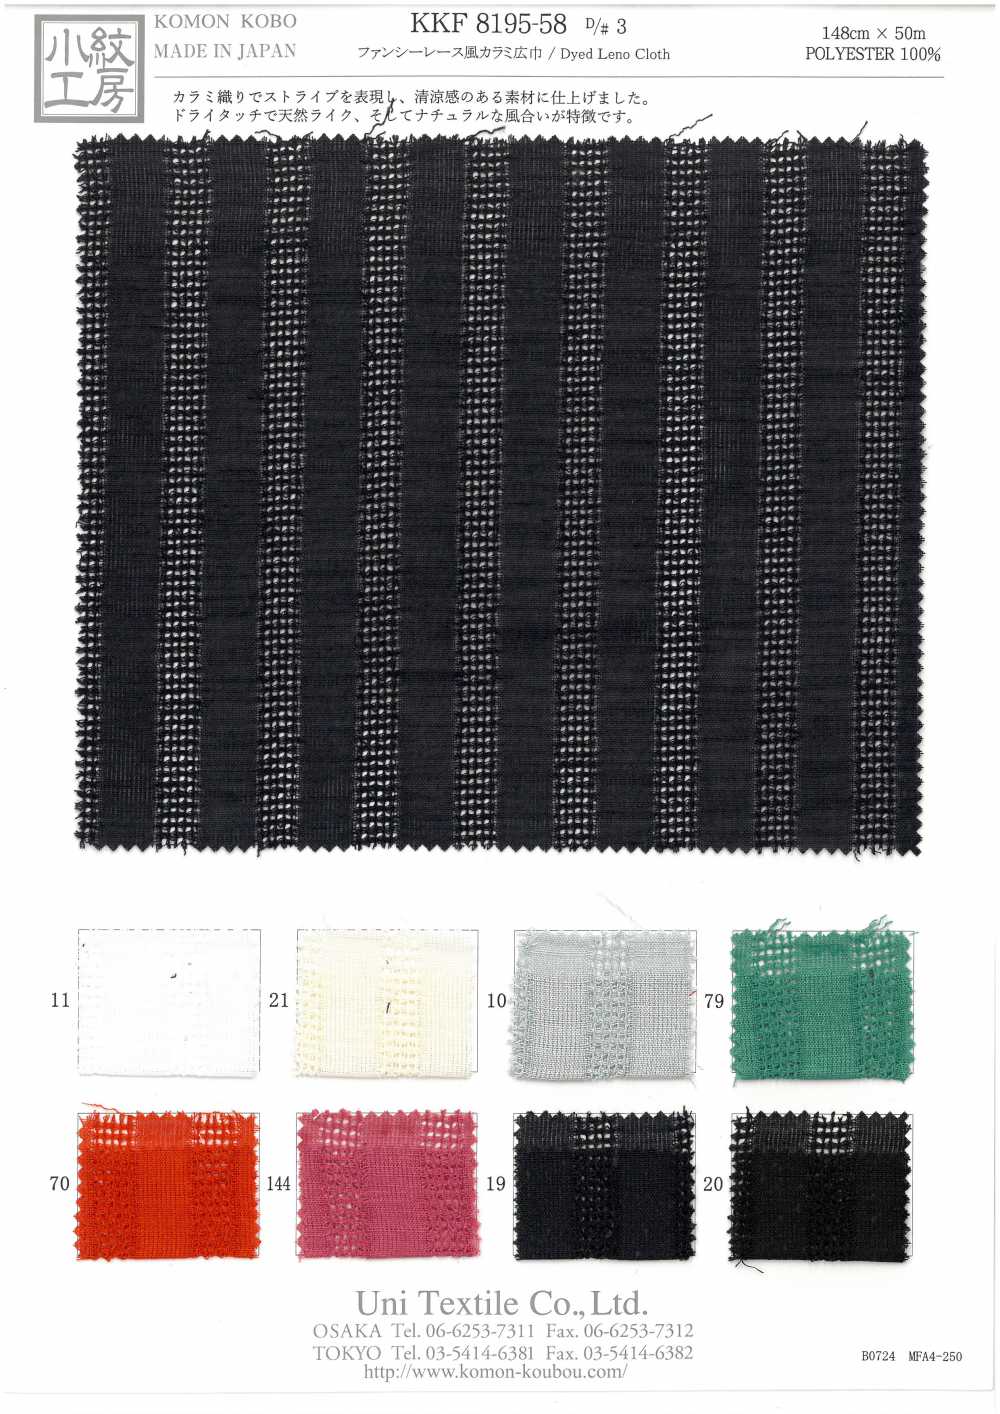 KKF8195-58-D/3 Tissage Leno Style Dentelle Fantaisie[Fabrication De Textile] Uni Textile